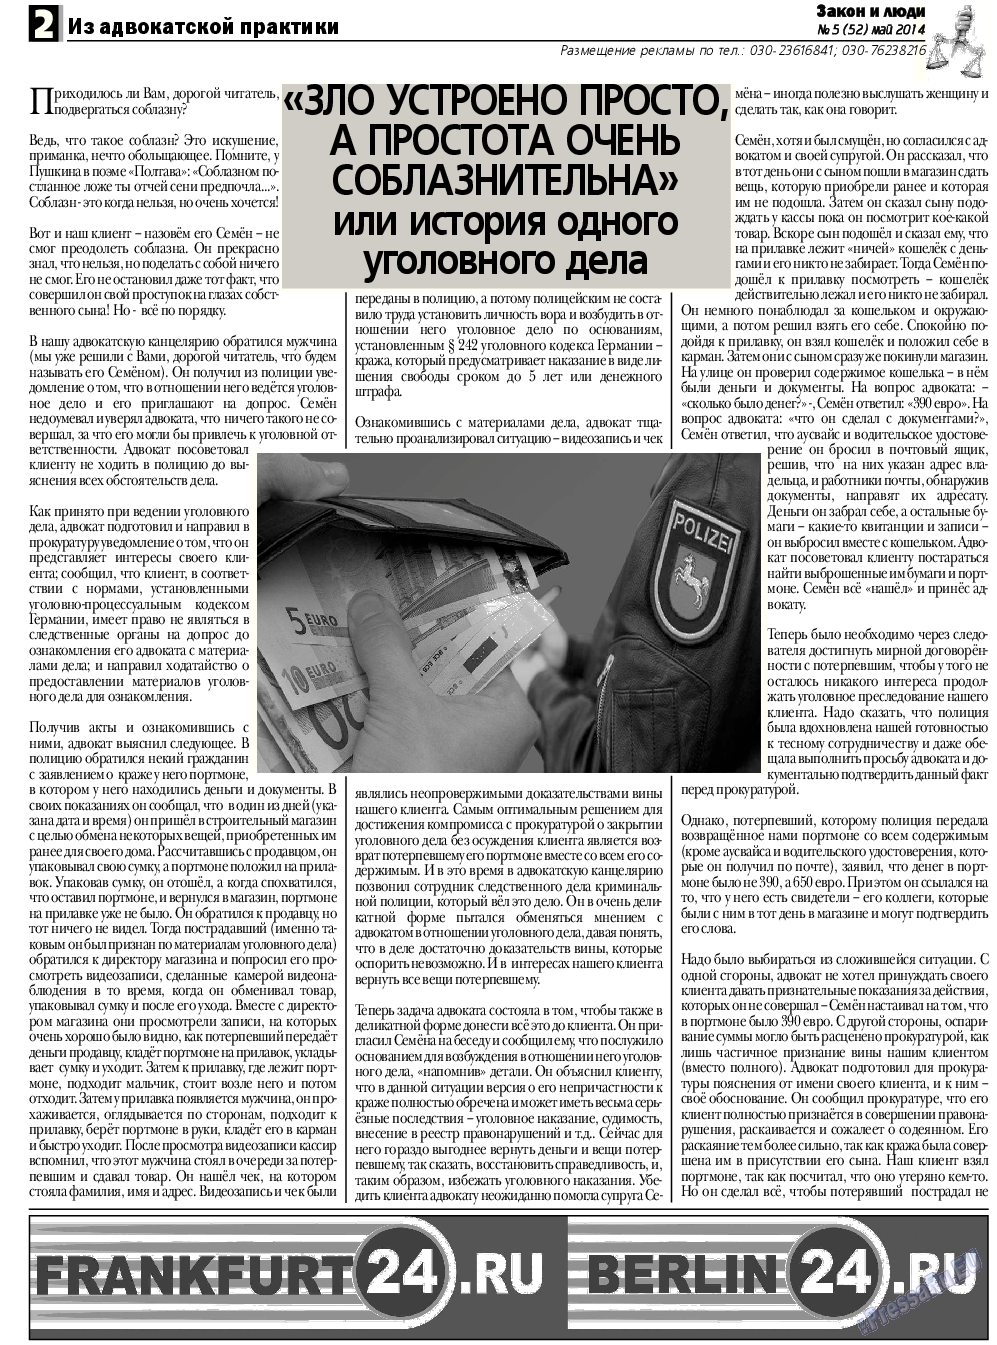 Закон и люди, газета. 2014 №5 стр.2